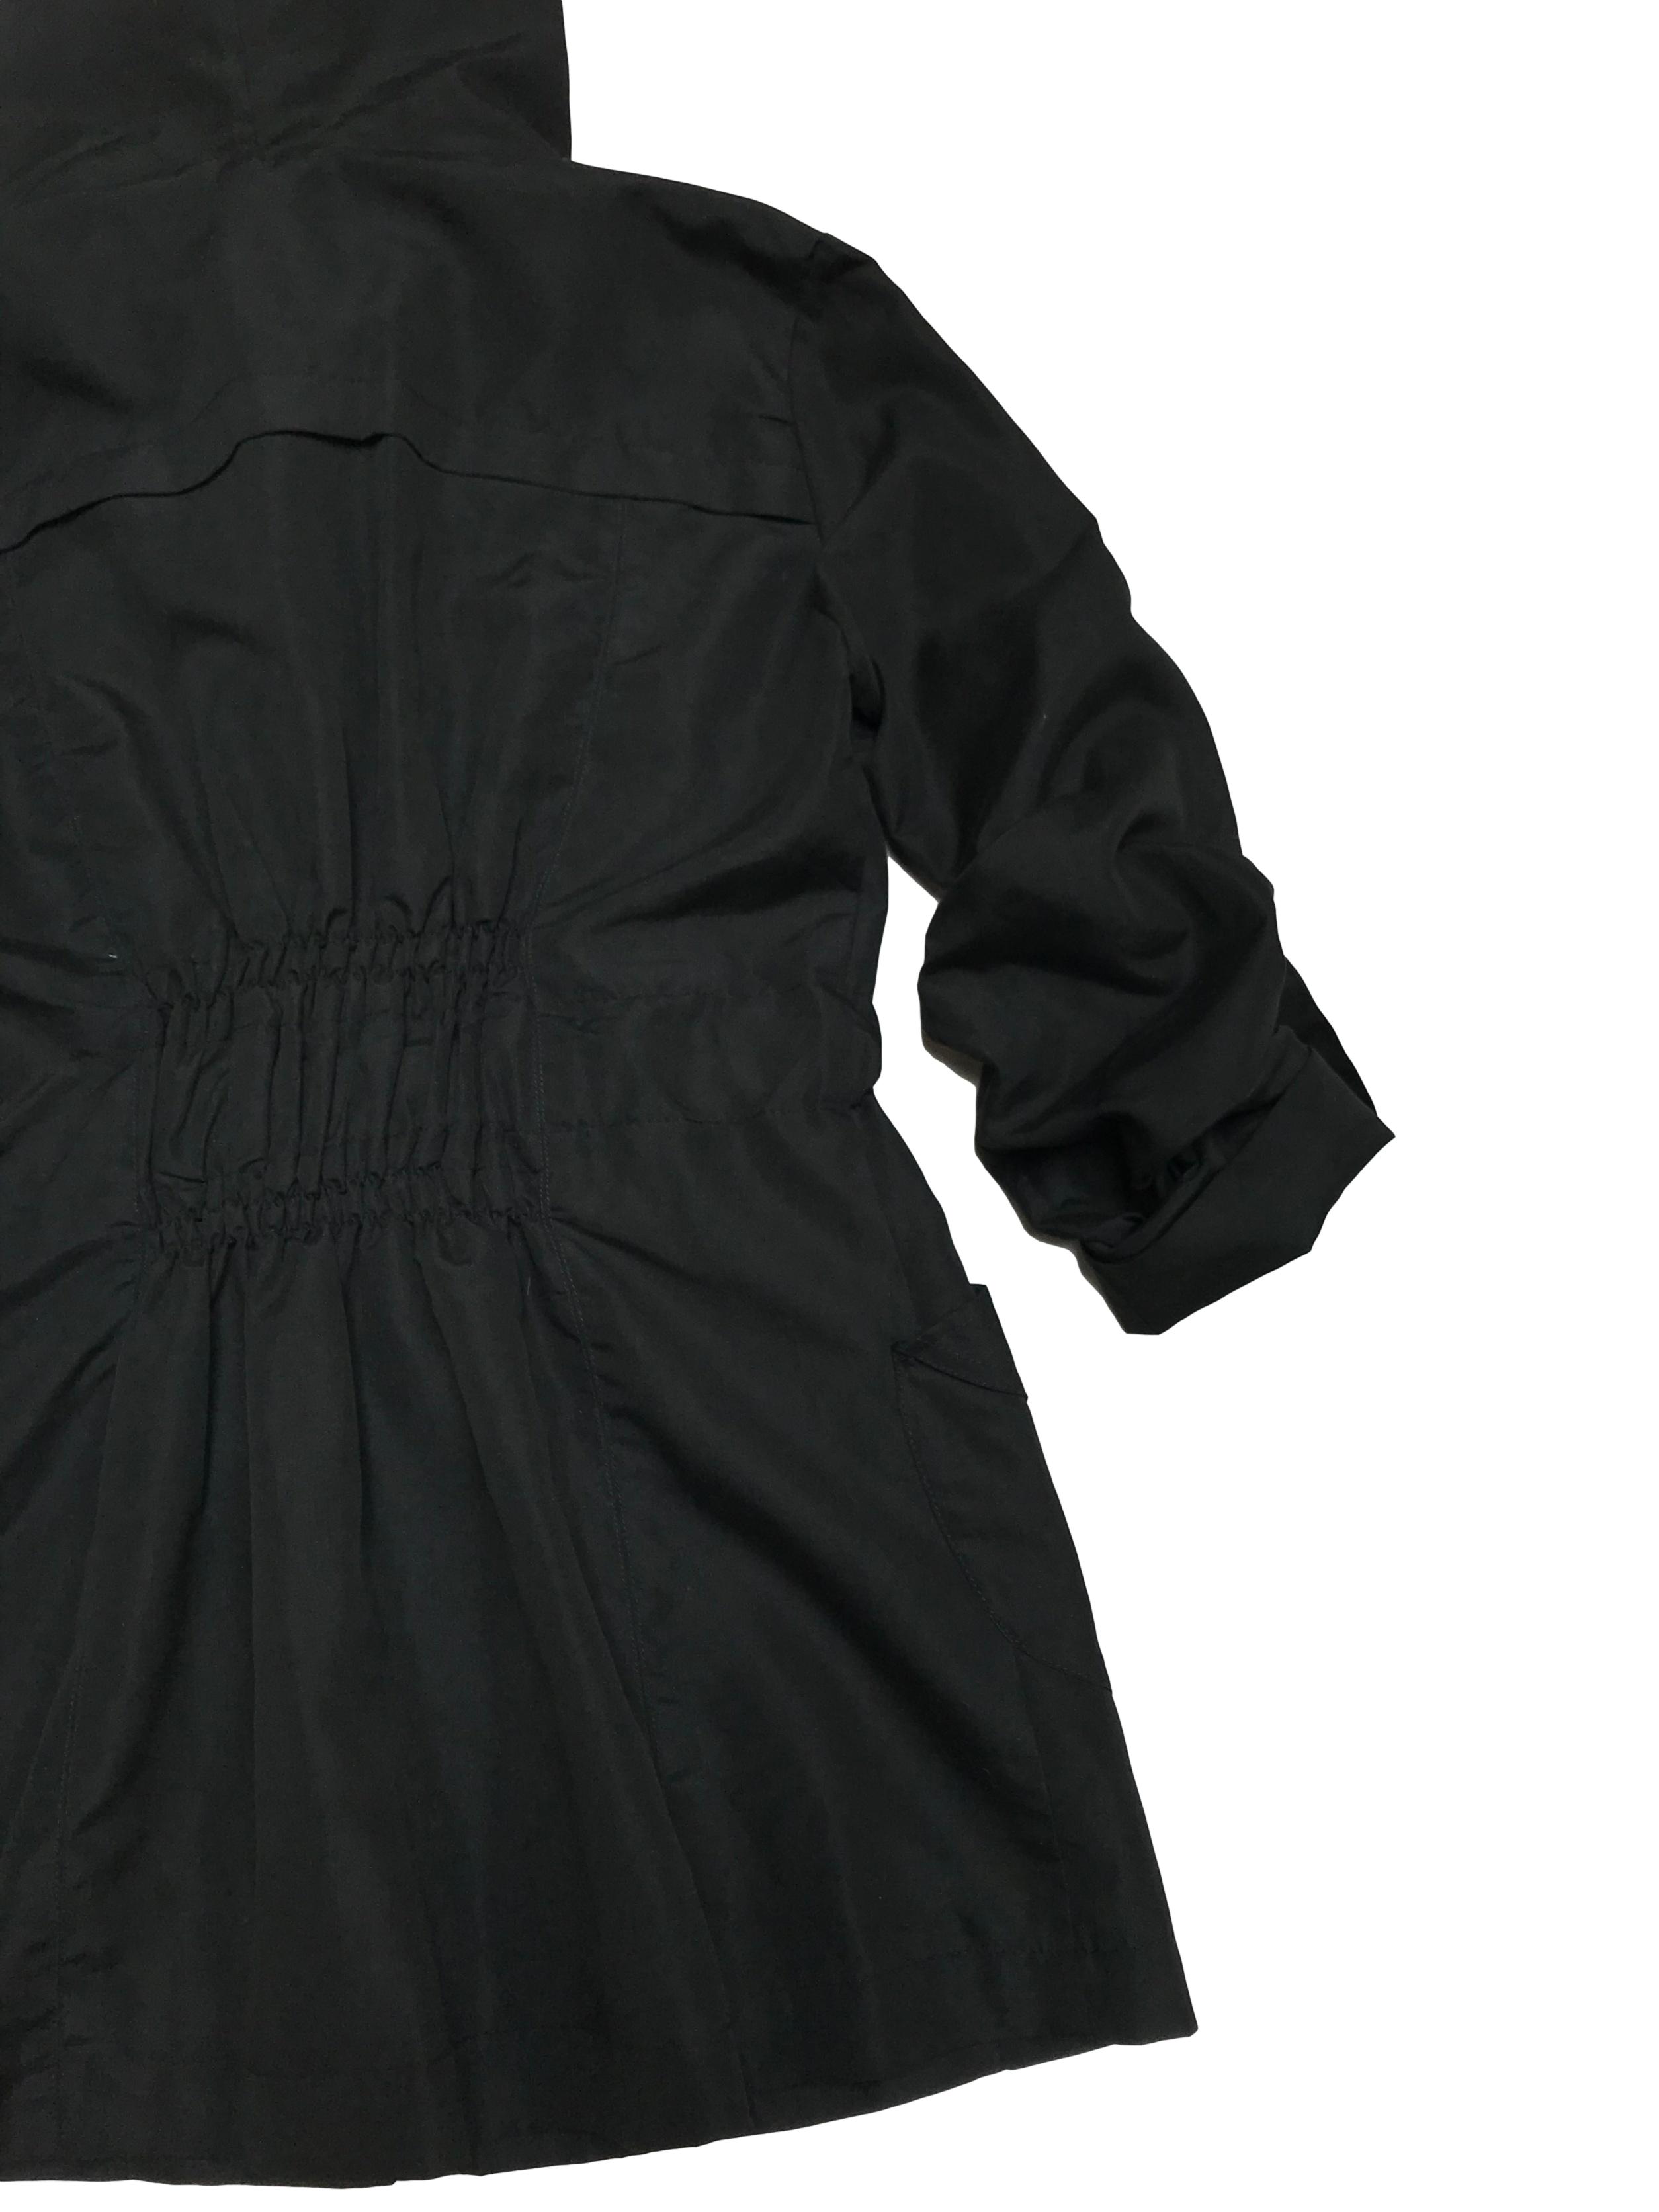 Casaca Bohem negra con capucha, cinto, mangas remangadas y lleva forro. Largo 71cm